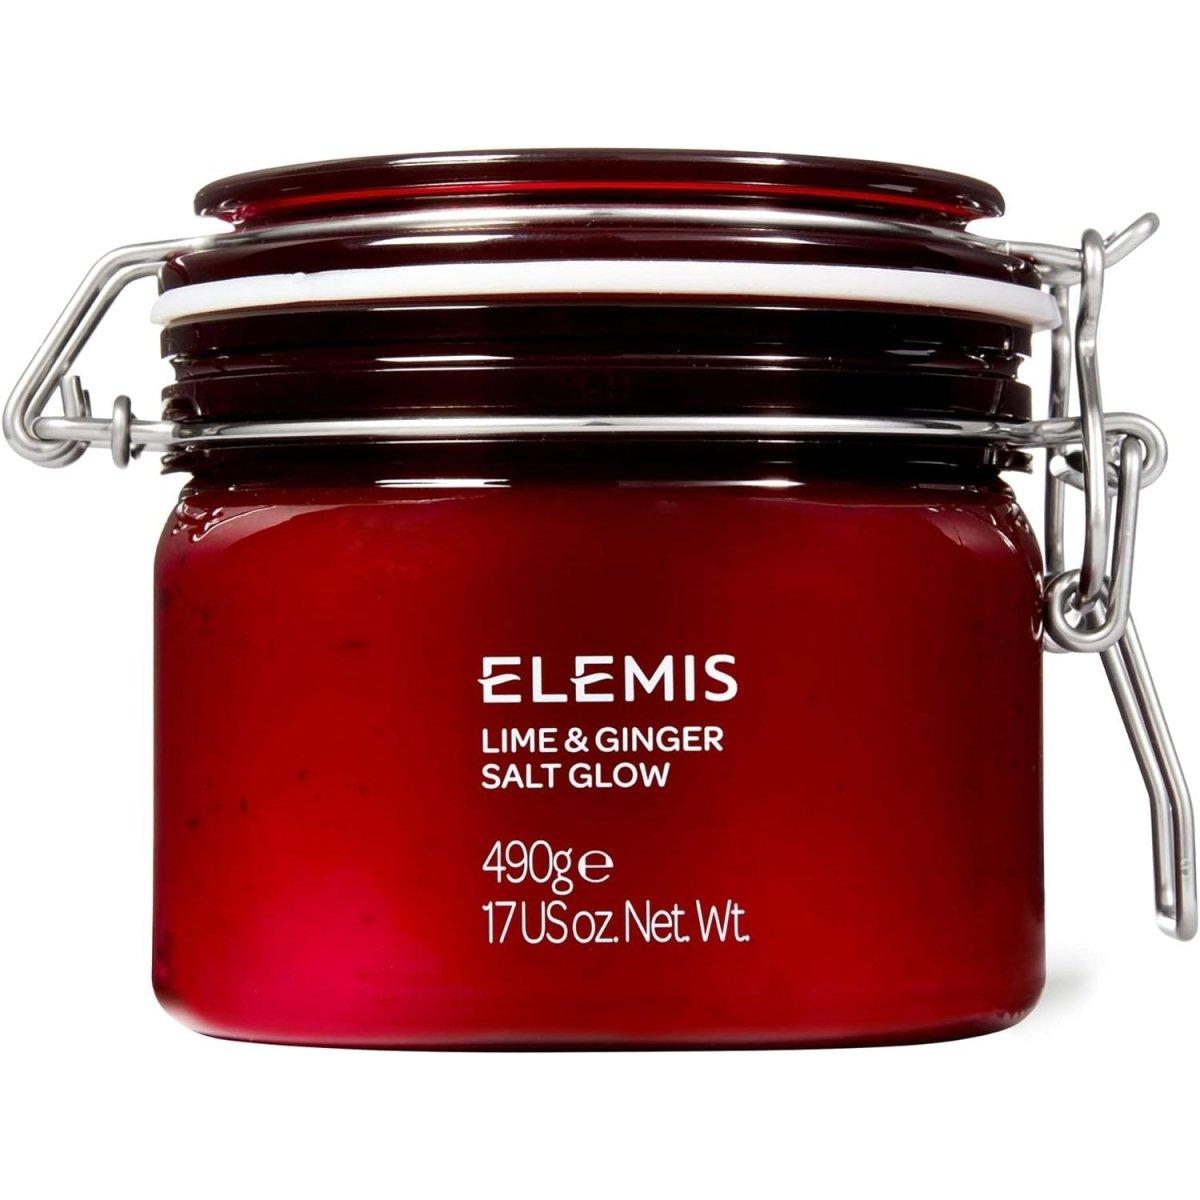 Elemis Lime & Ginger Salt Glow - 490g - DG International Ventures Limited